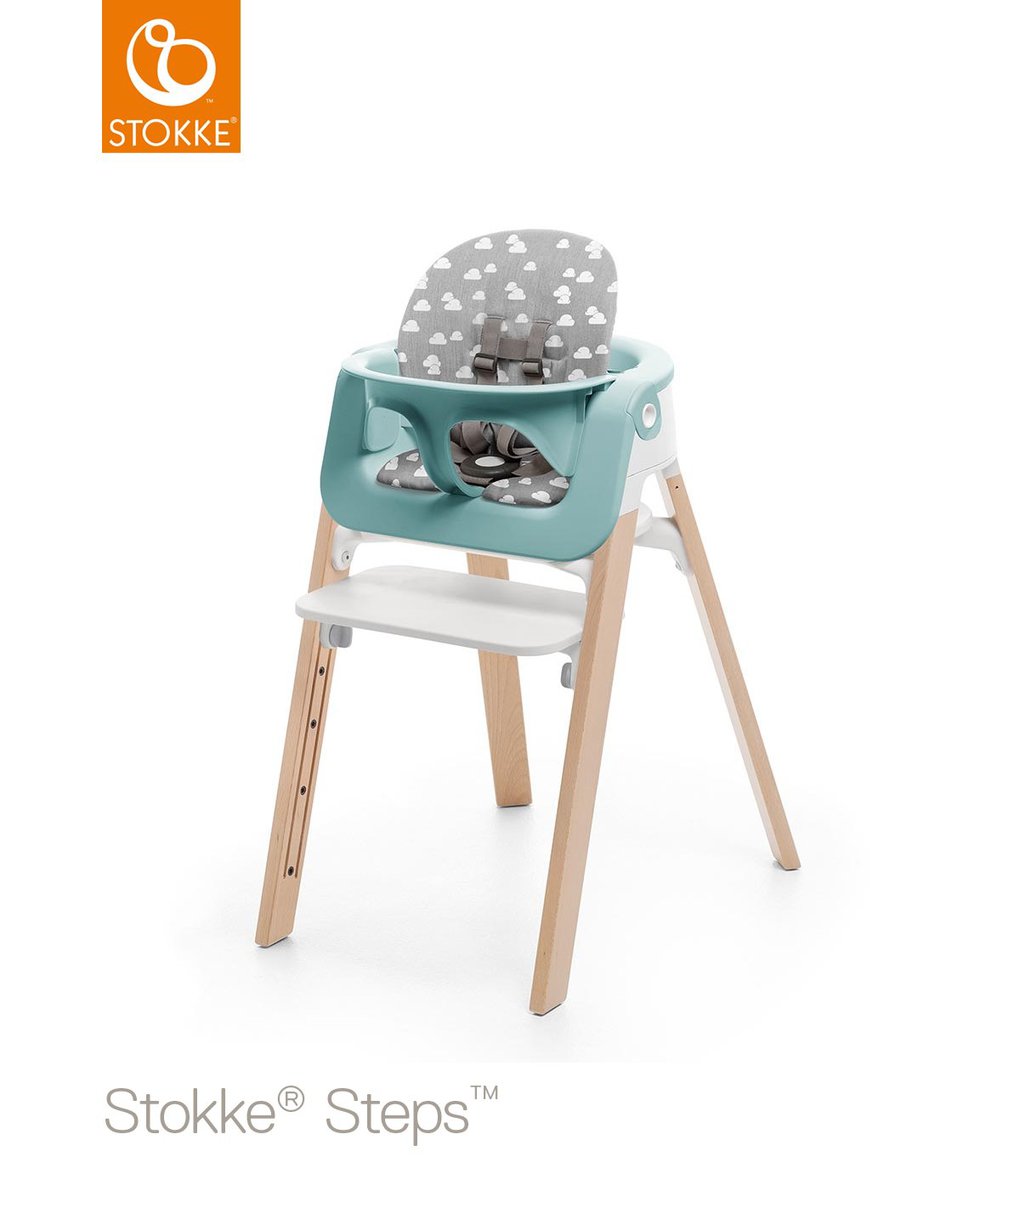 Cuscino stokke® steps baby set - grey clouds - Stokke